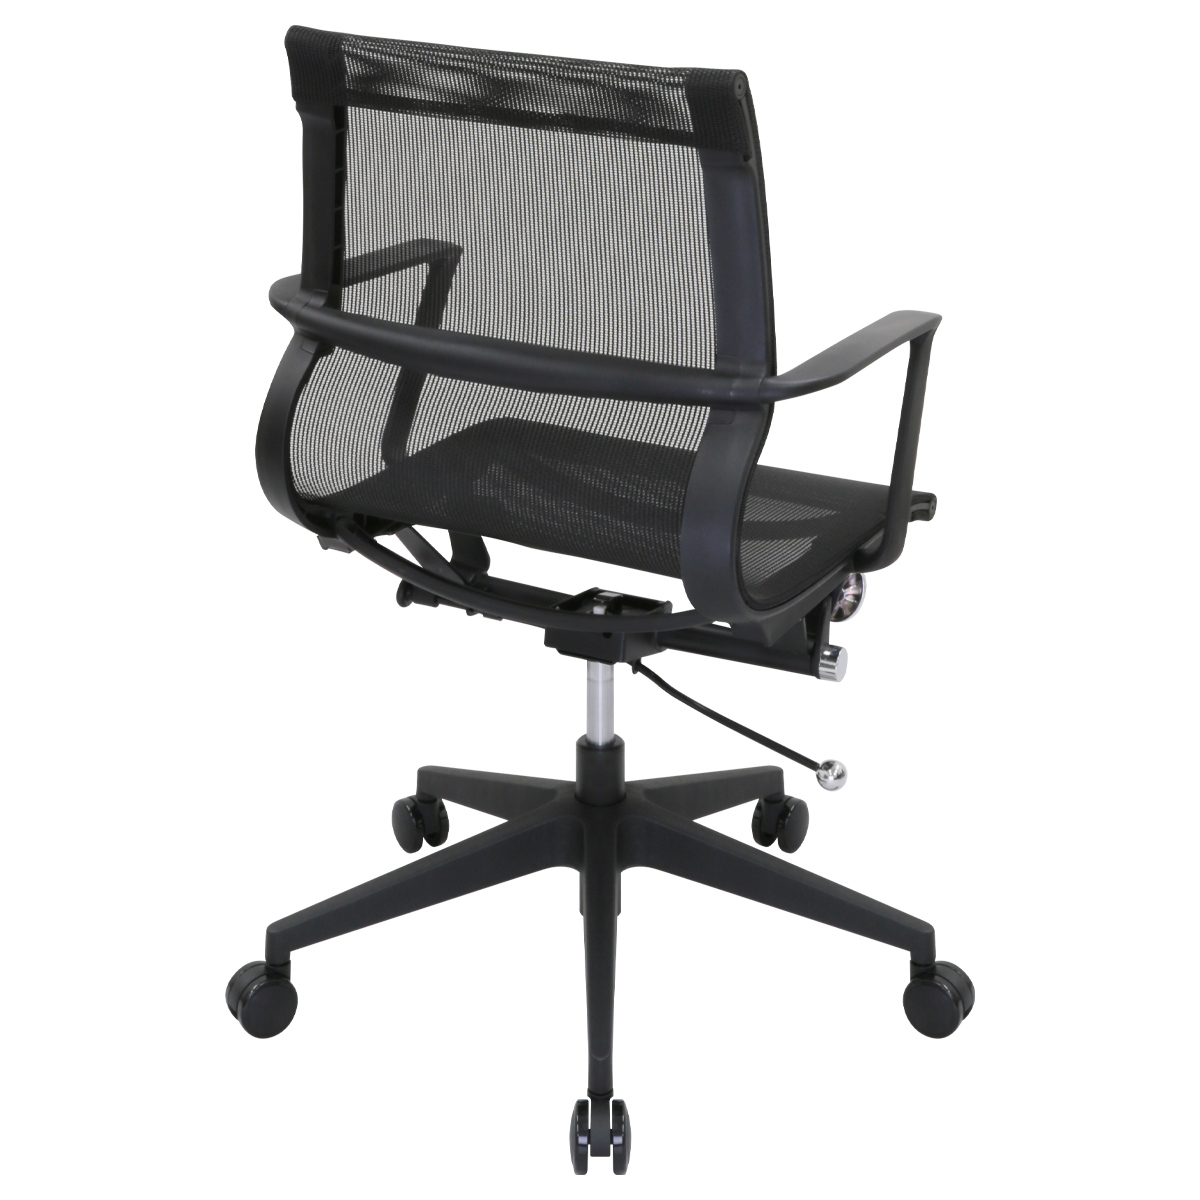 ビジネスチェアLU メッシュタイプ 幅560 奥行675 高さ900-1000 LU-6824M-BK 通販 オフィスチェア・事務椅子  オフィス家具のカグクロ